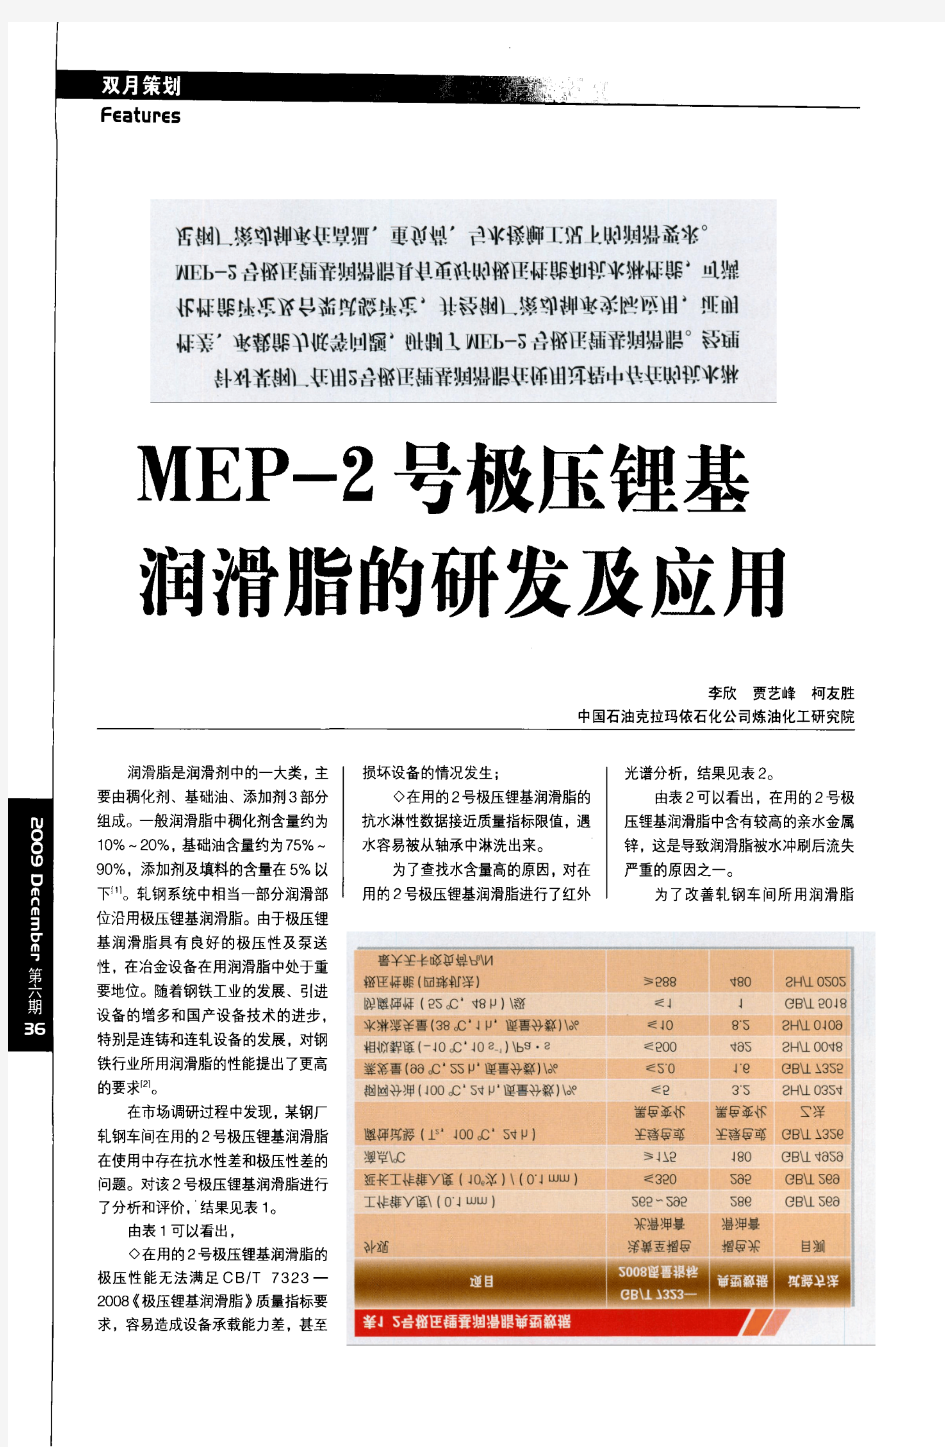 MEP_2号极压锂基润滑脂的研发及应用